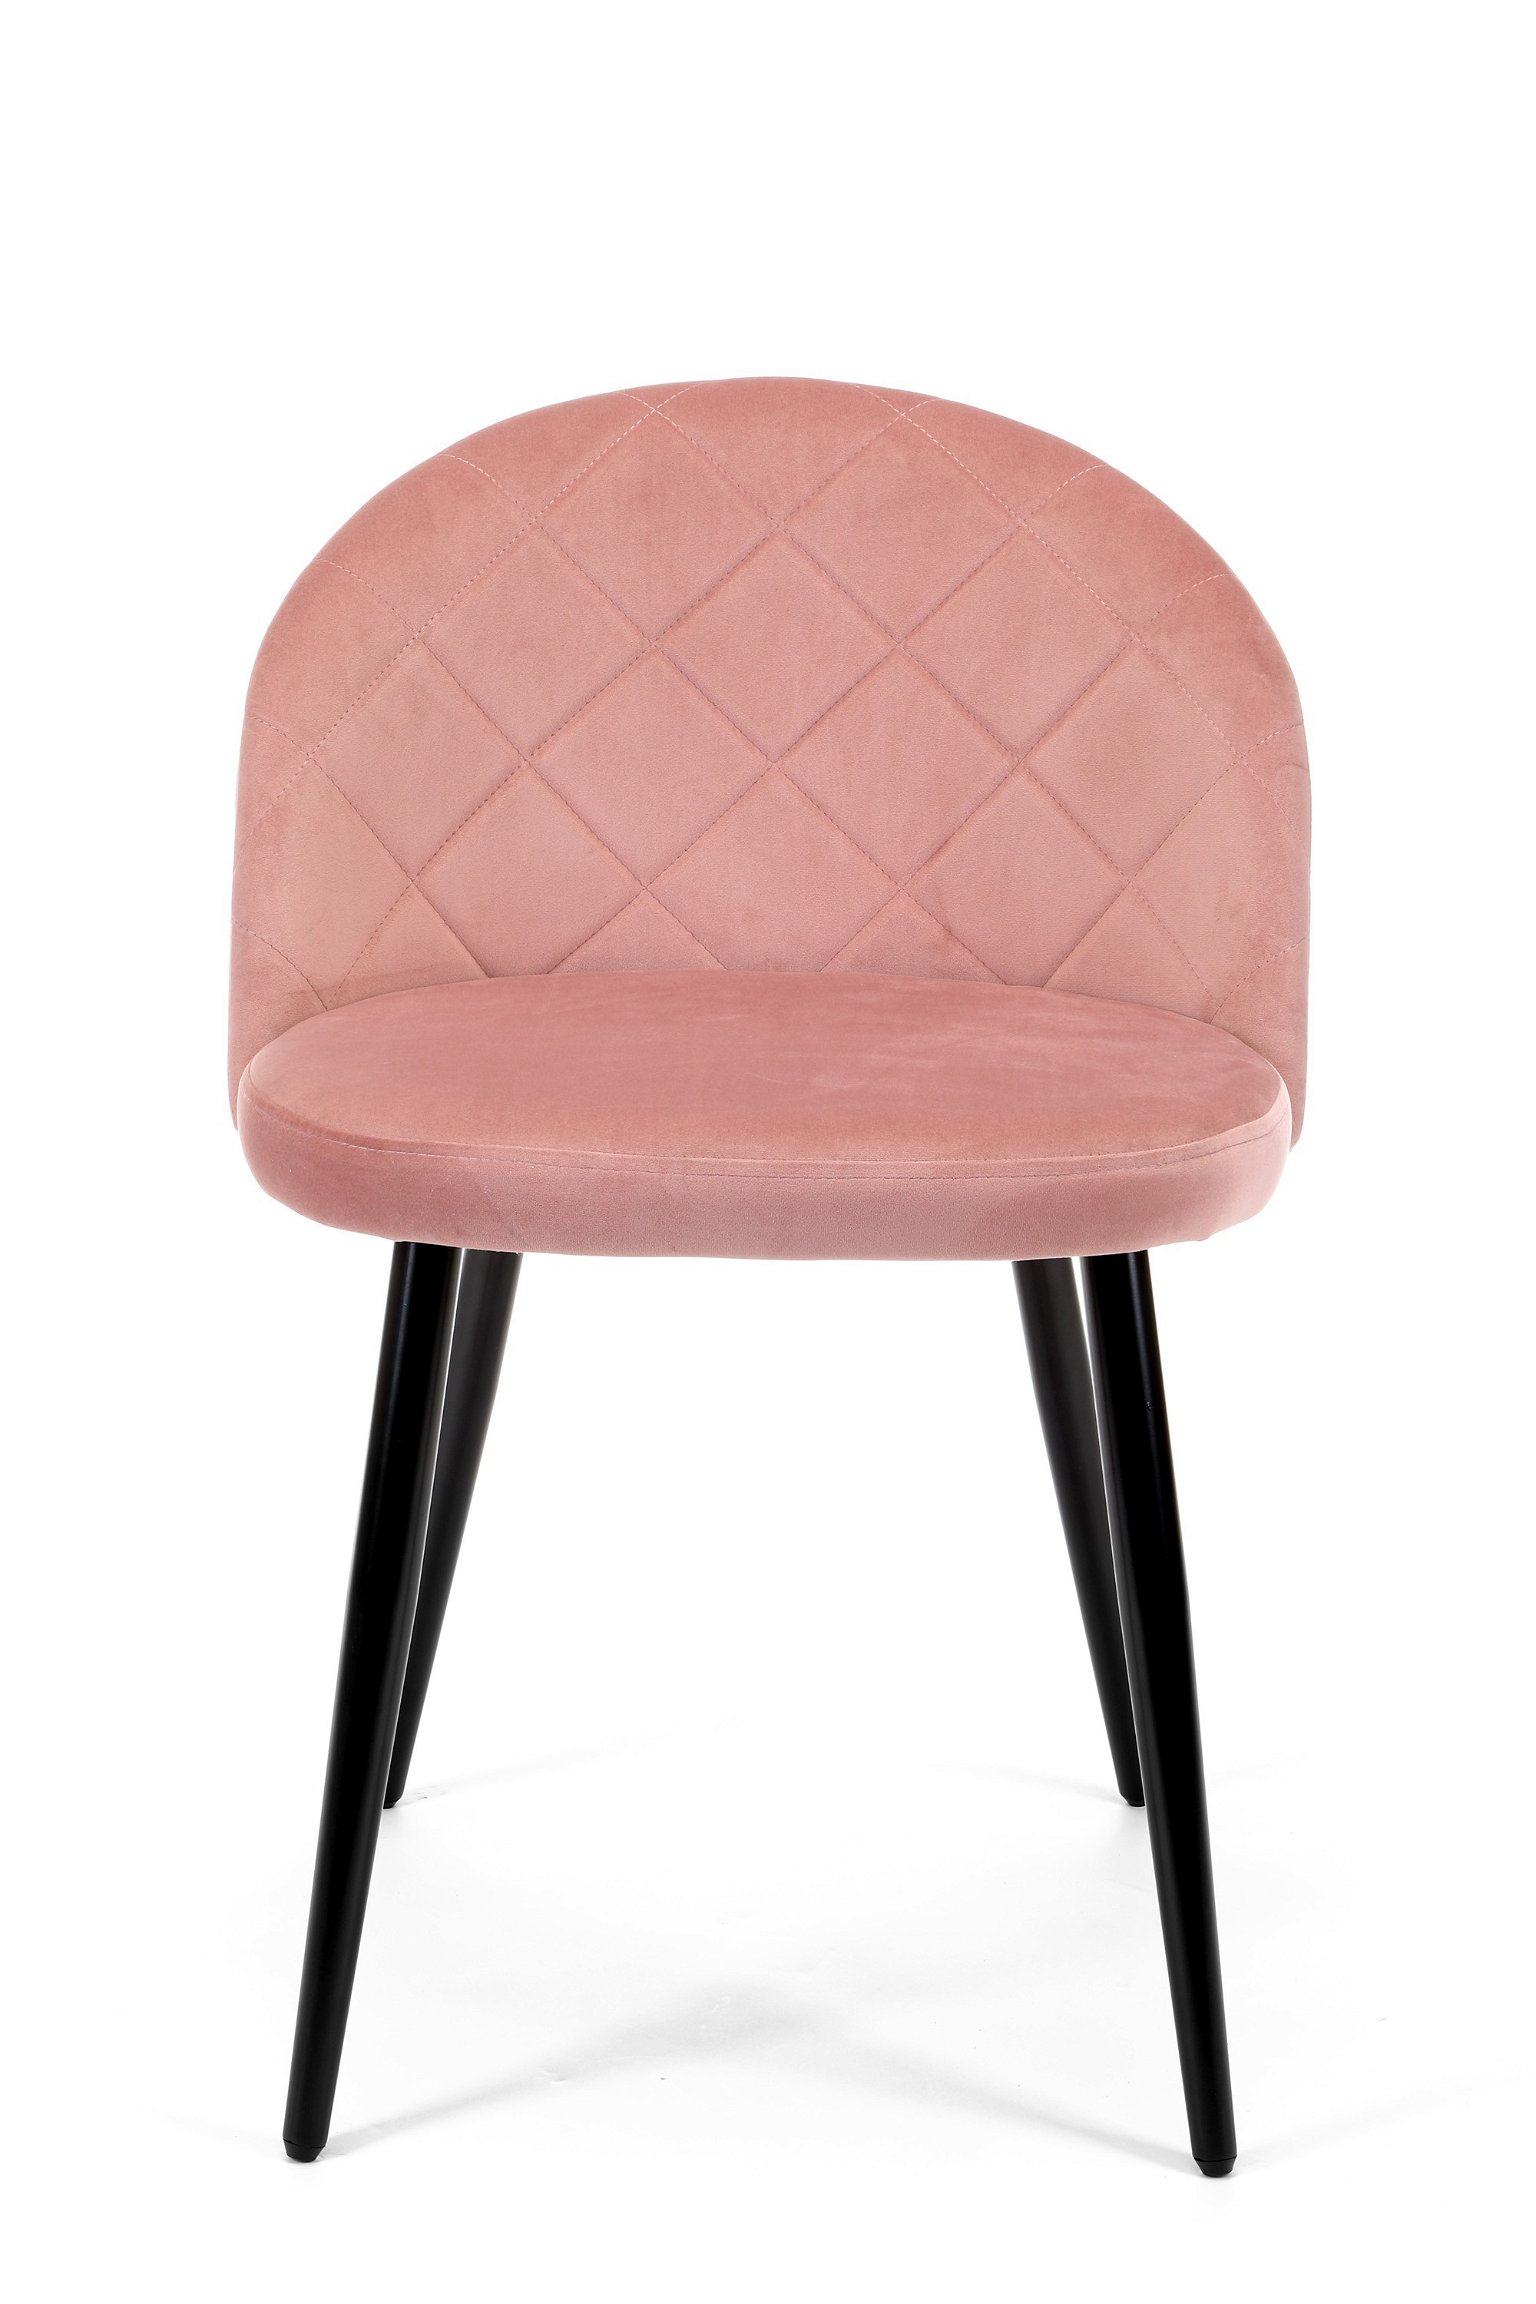 4-ių kėdžių komplektas SJ.077, rožinė - 7